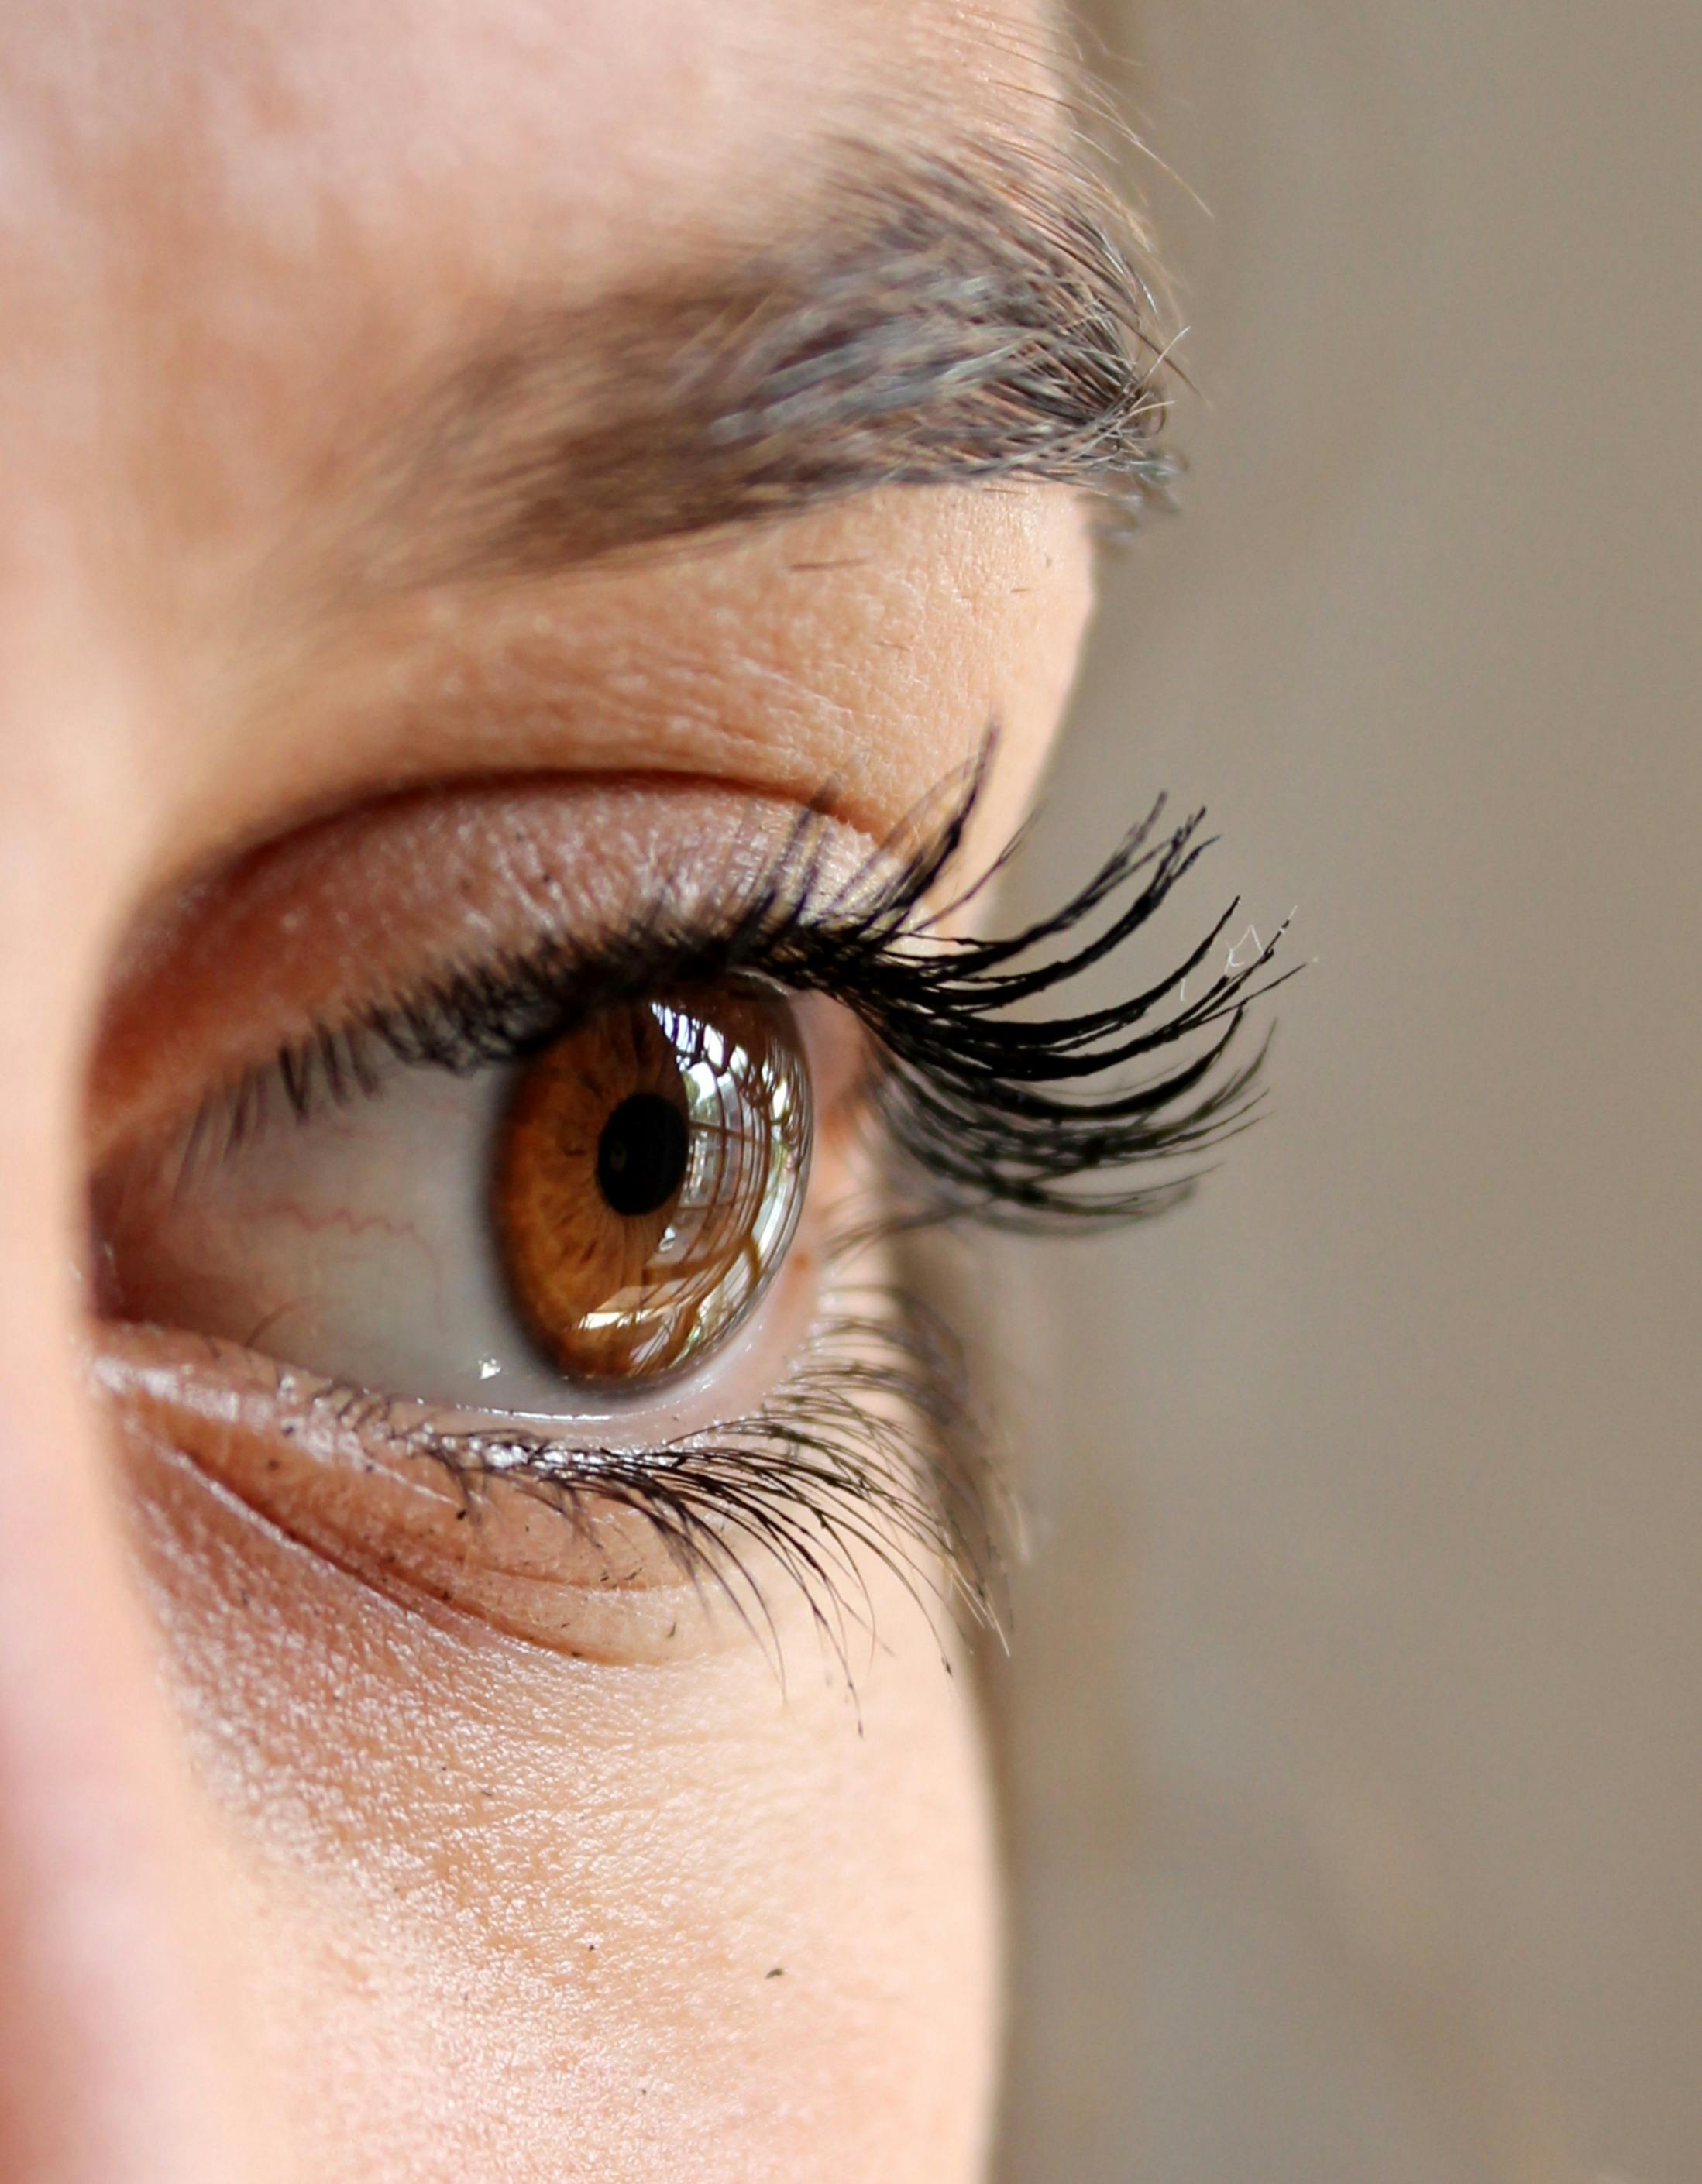 Eyelashes Grow Stronger Careprost: How Do I Use It?